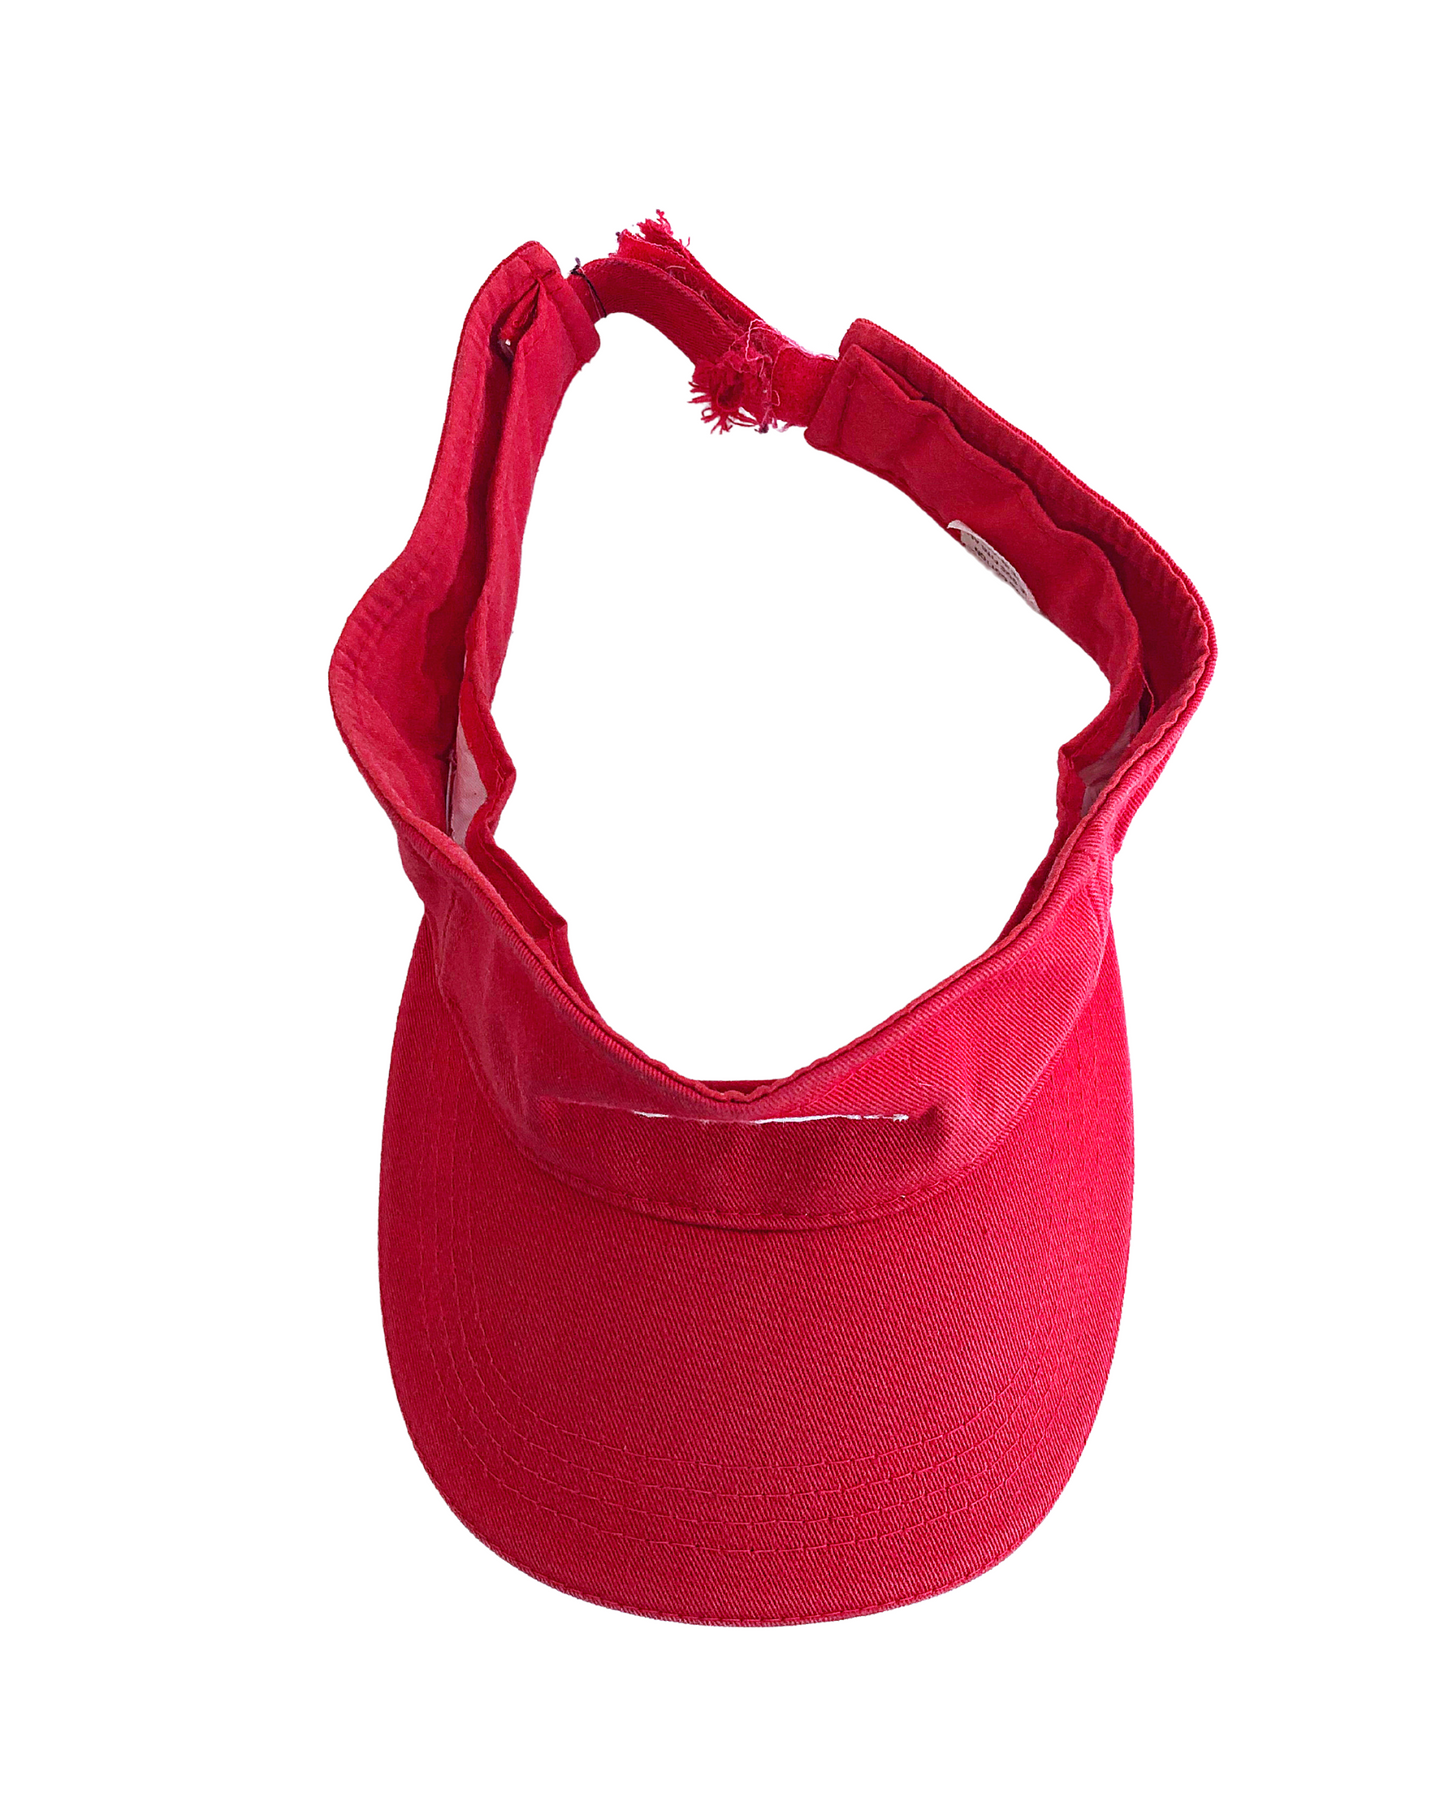 Vintage 90's ADIDAS TREFOIL Red Embroidered Logo Sportswear Atheltic Adjustable Visor Hat